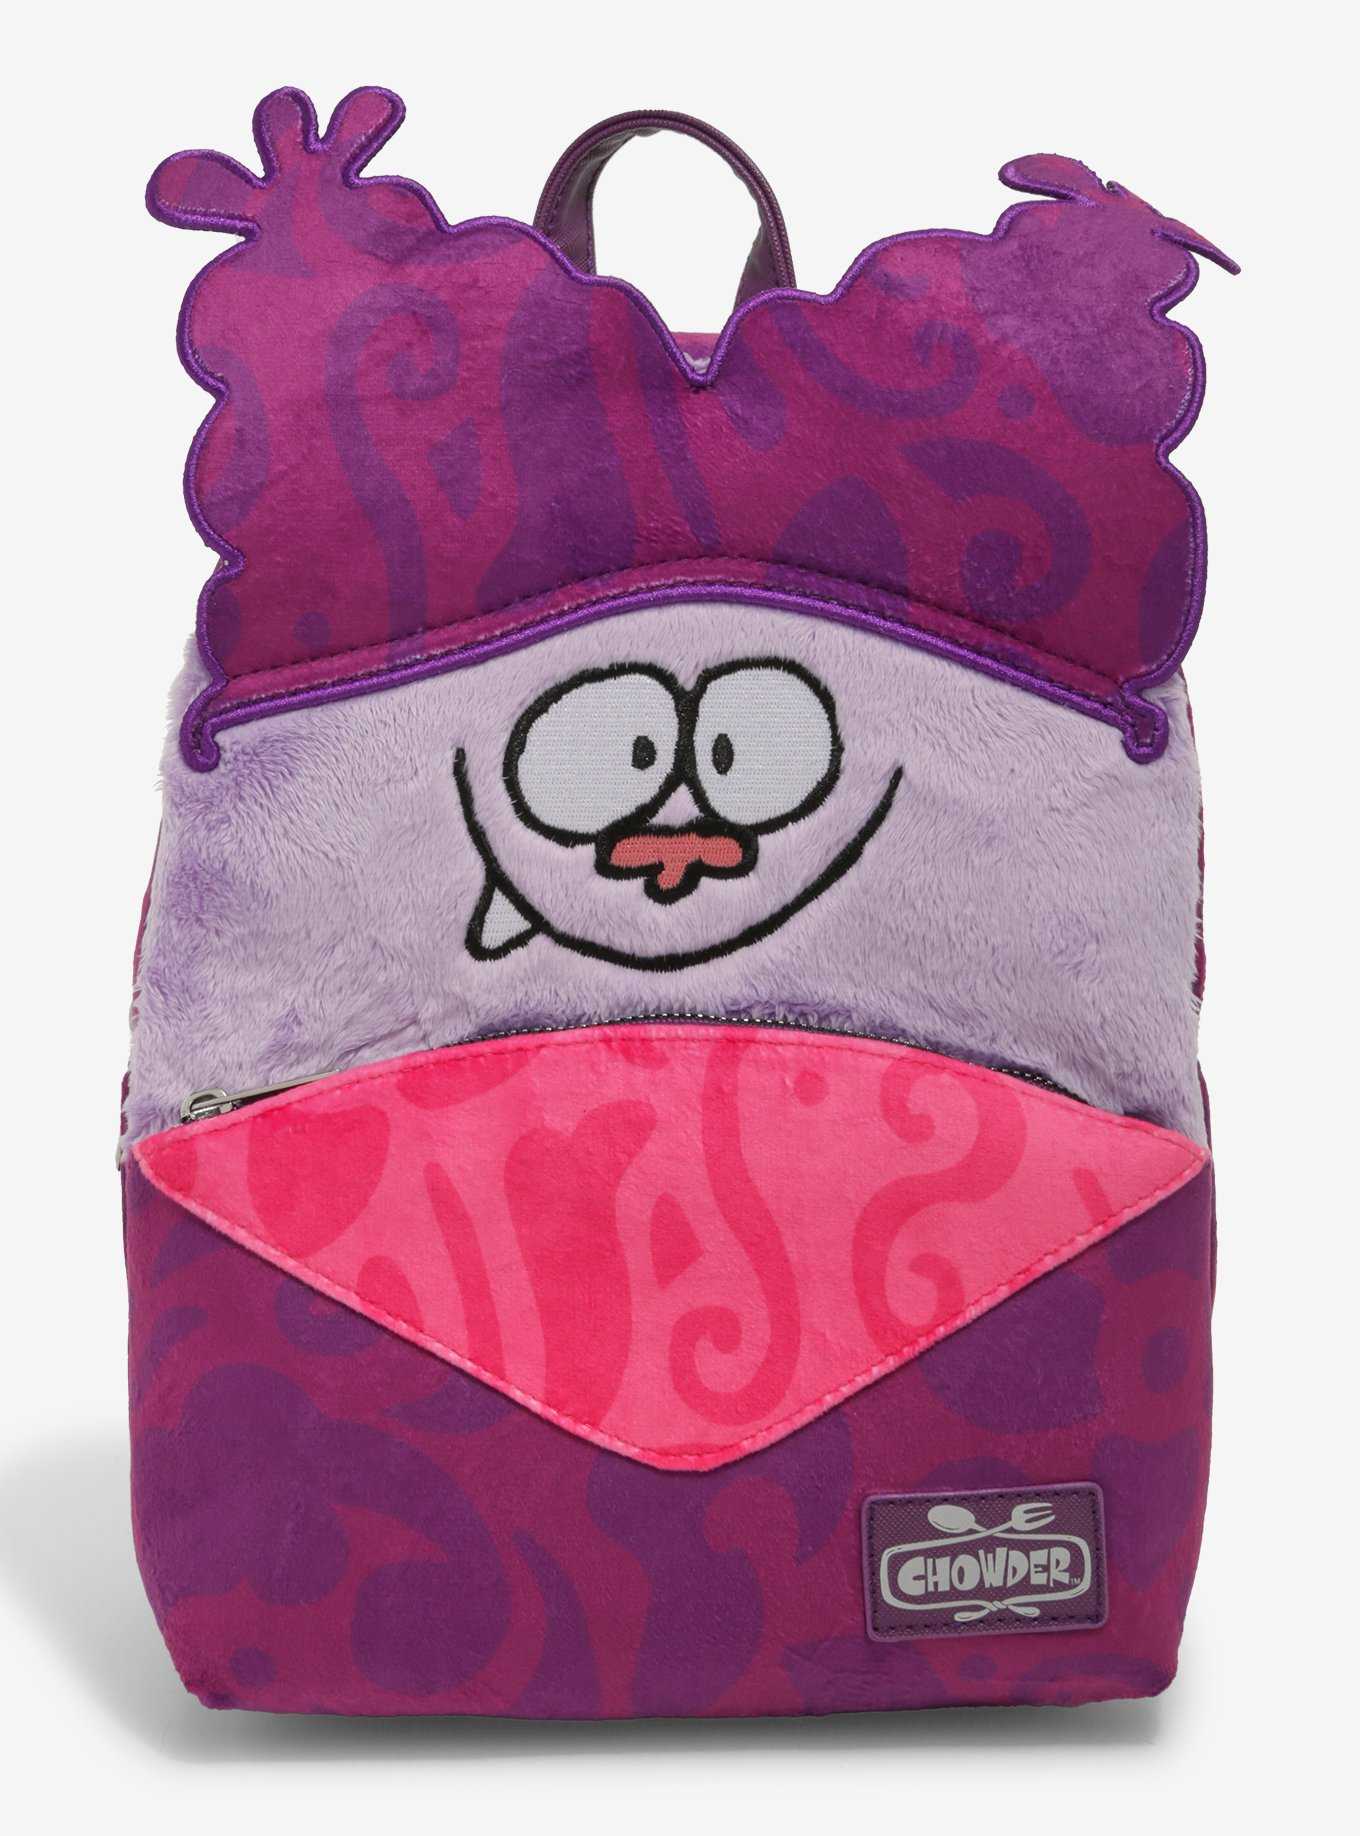 Chowder Figural Mini Backpack, , hi-res